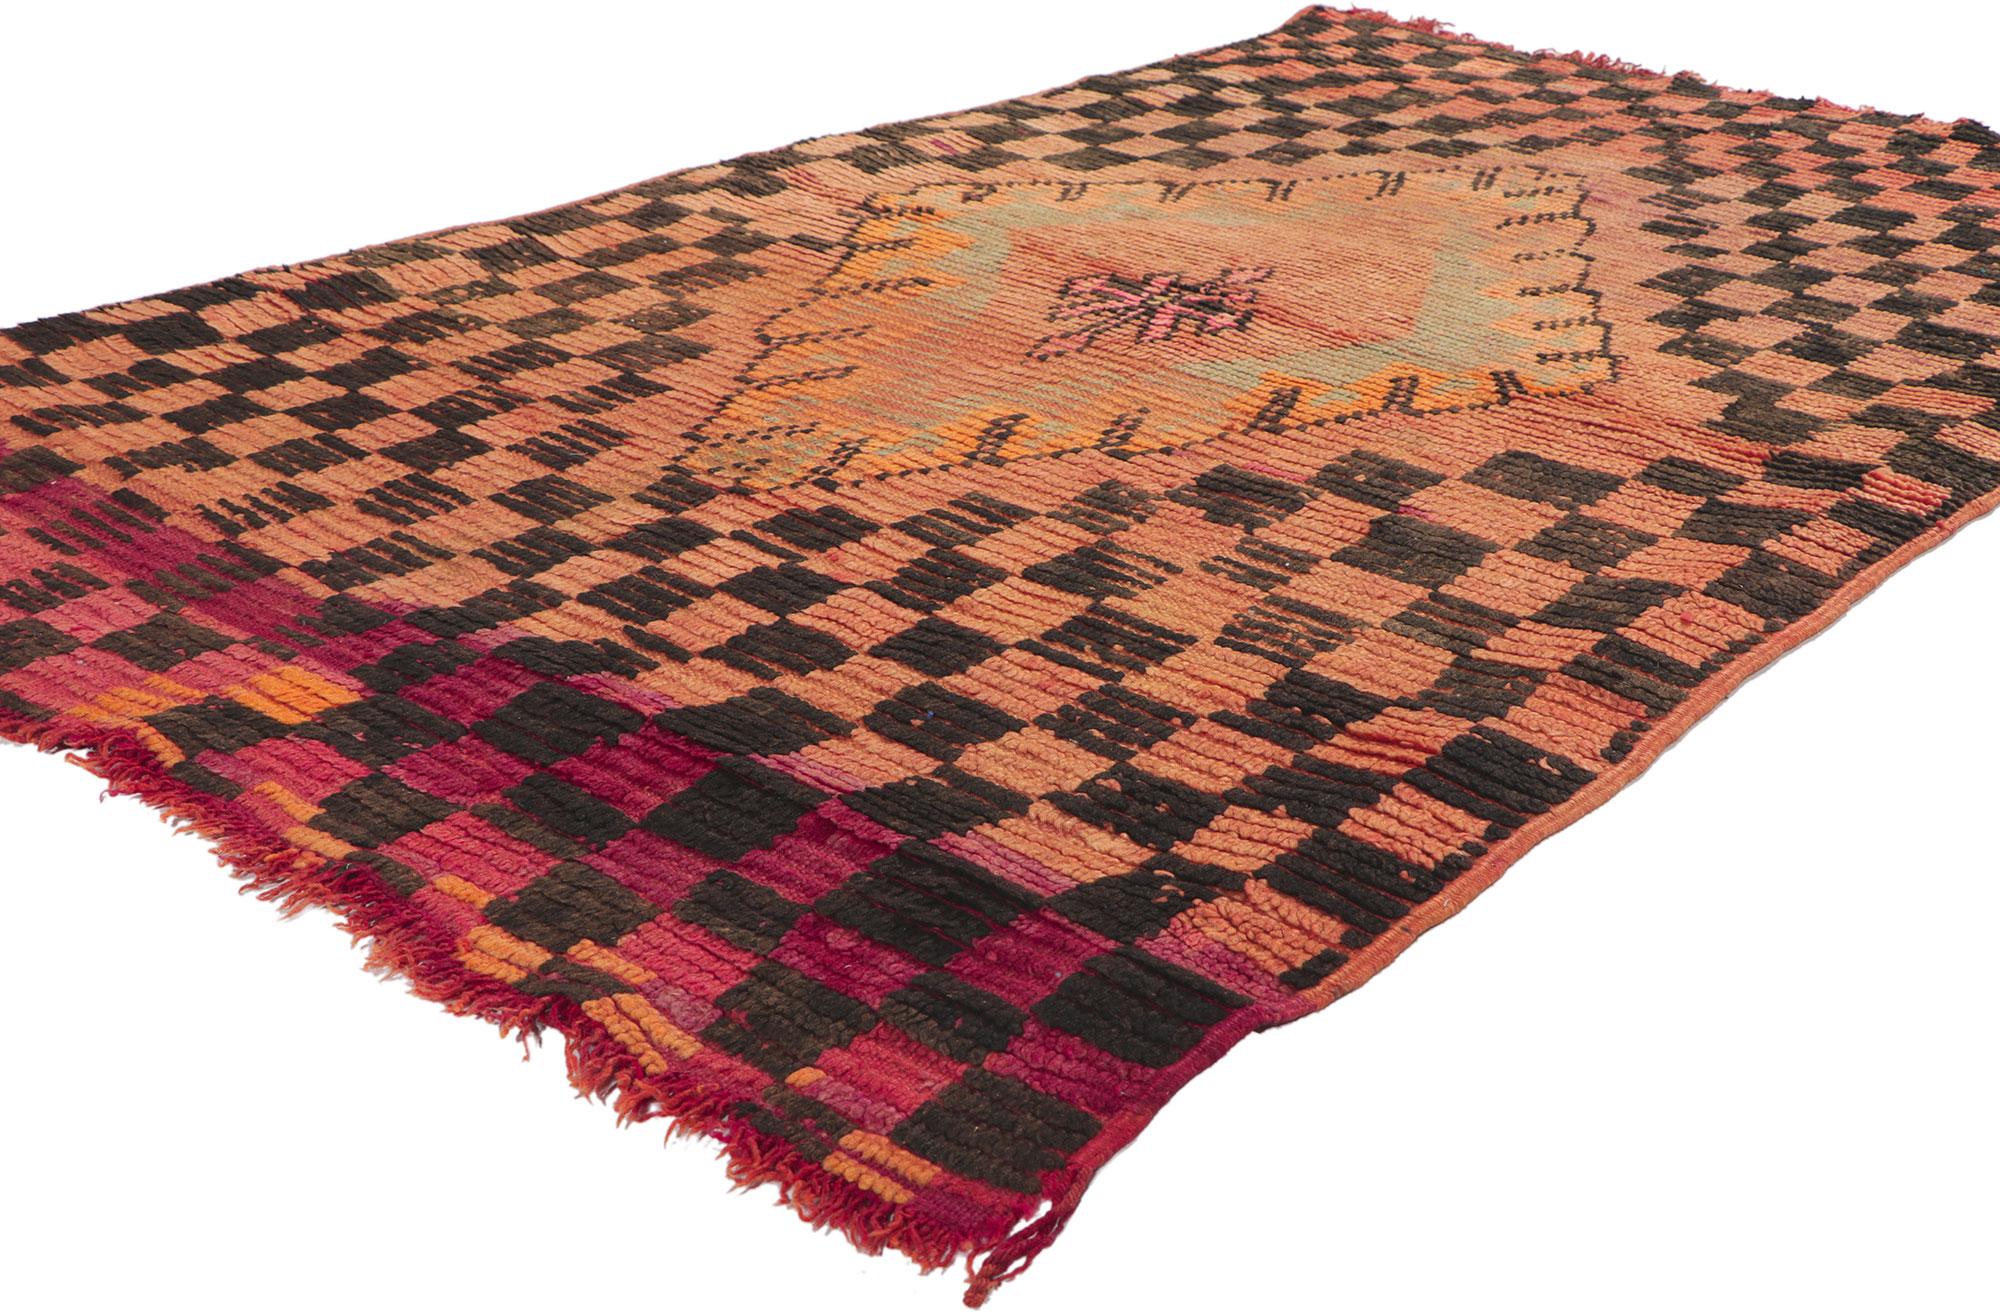 78406 Vintage Orange Boujad Marokkanischer Teppich, 03'08 x 06'00. Boujad-Teppiche, die aus der Region Boujad im Mittleren Atlasgebirge stammen, sind traditionelle handgewebte marokkanische Meisterwerke, die von einheimischen Berberhandwerkern